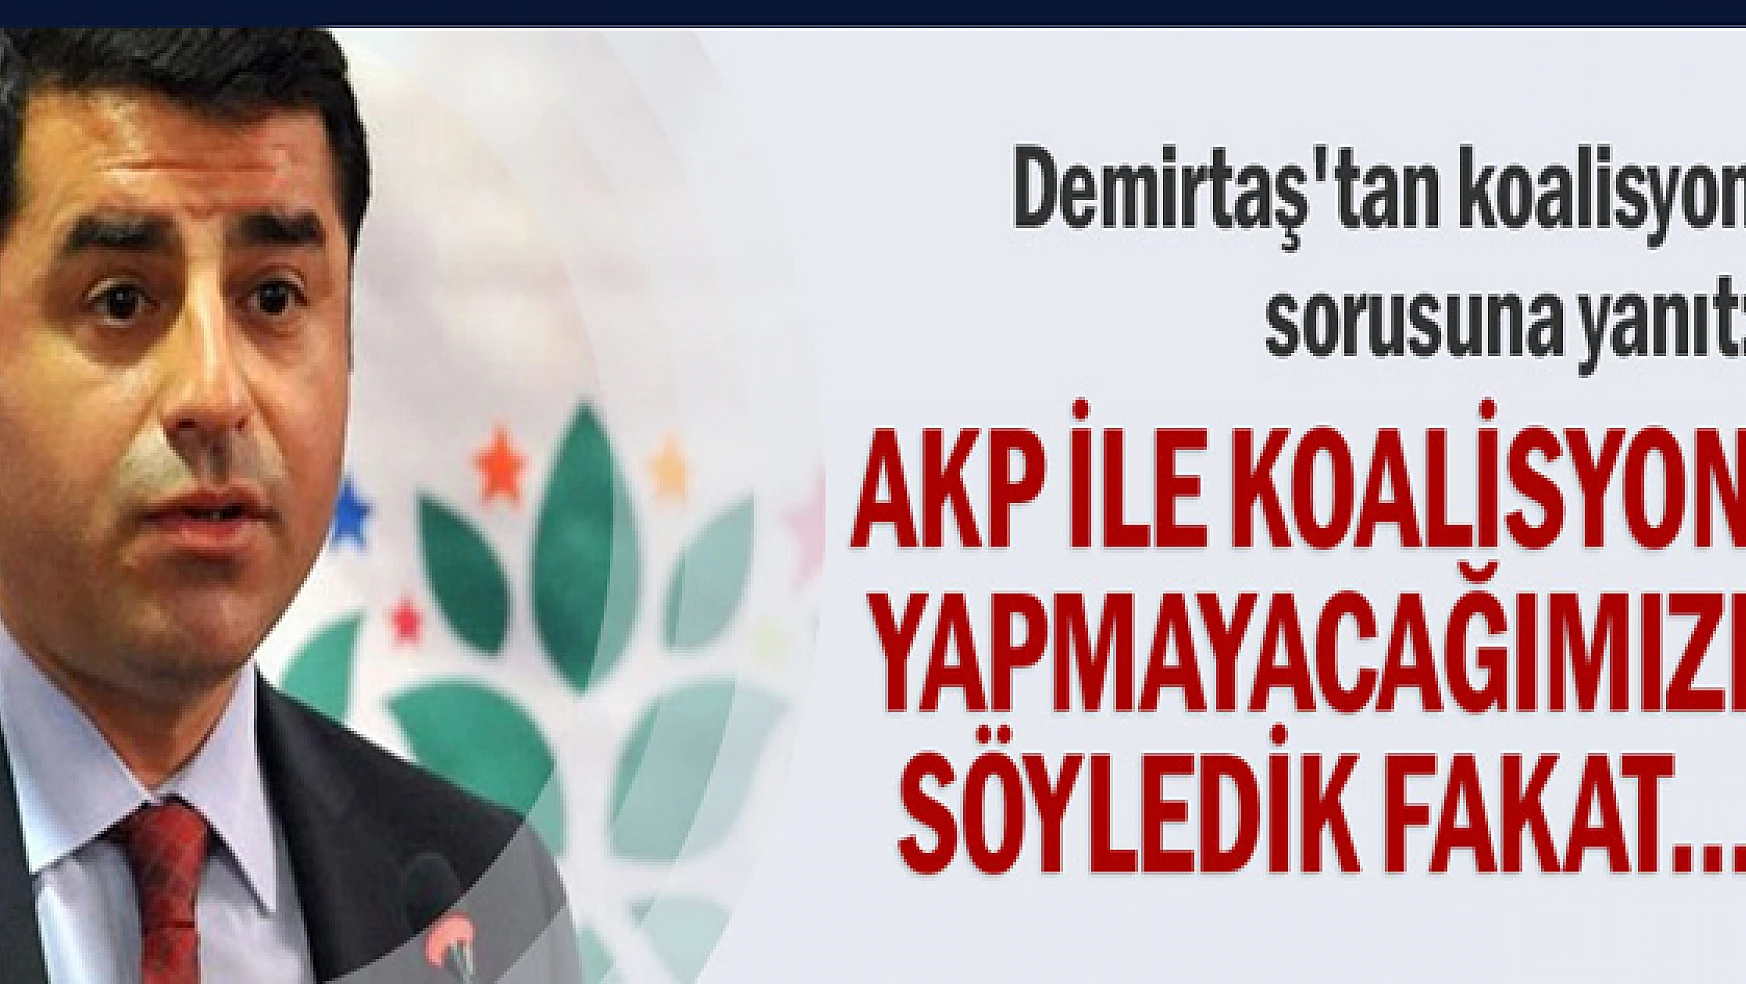 AKP ile koalisyon yapmayacağımızı söyledik fakat...